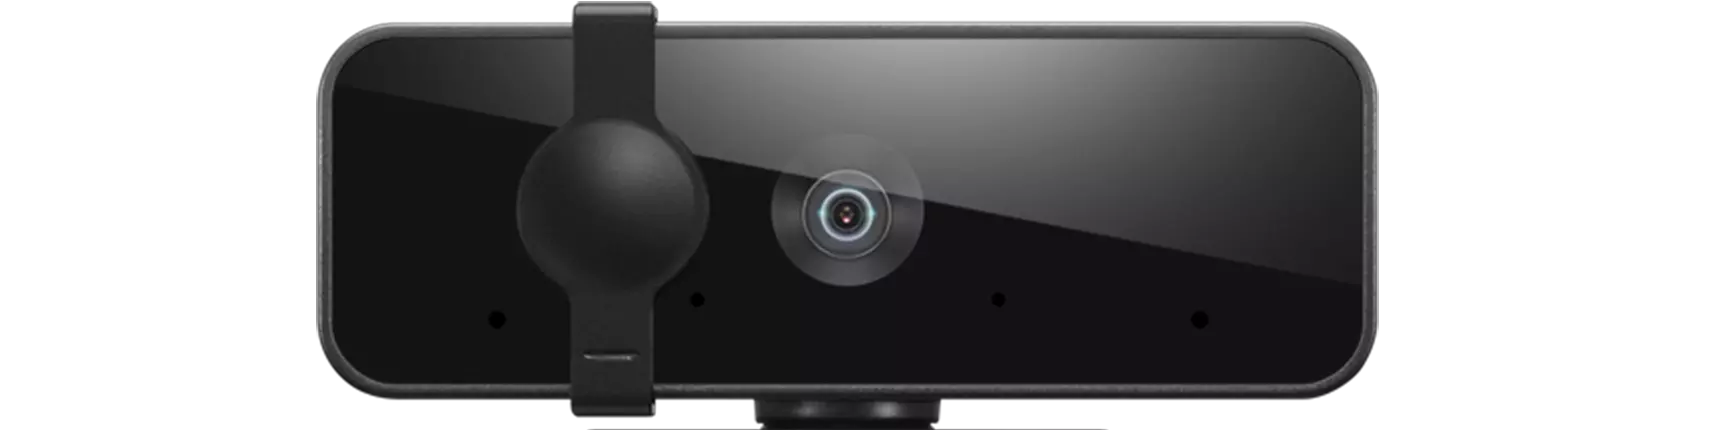 Closeup of webcam